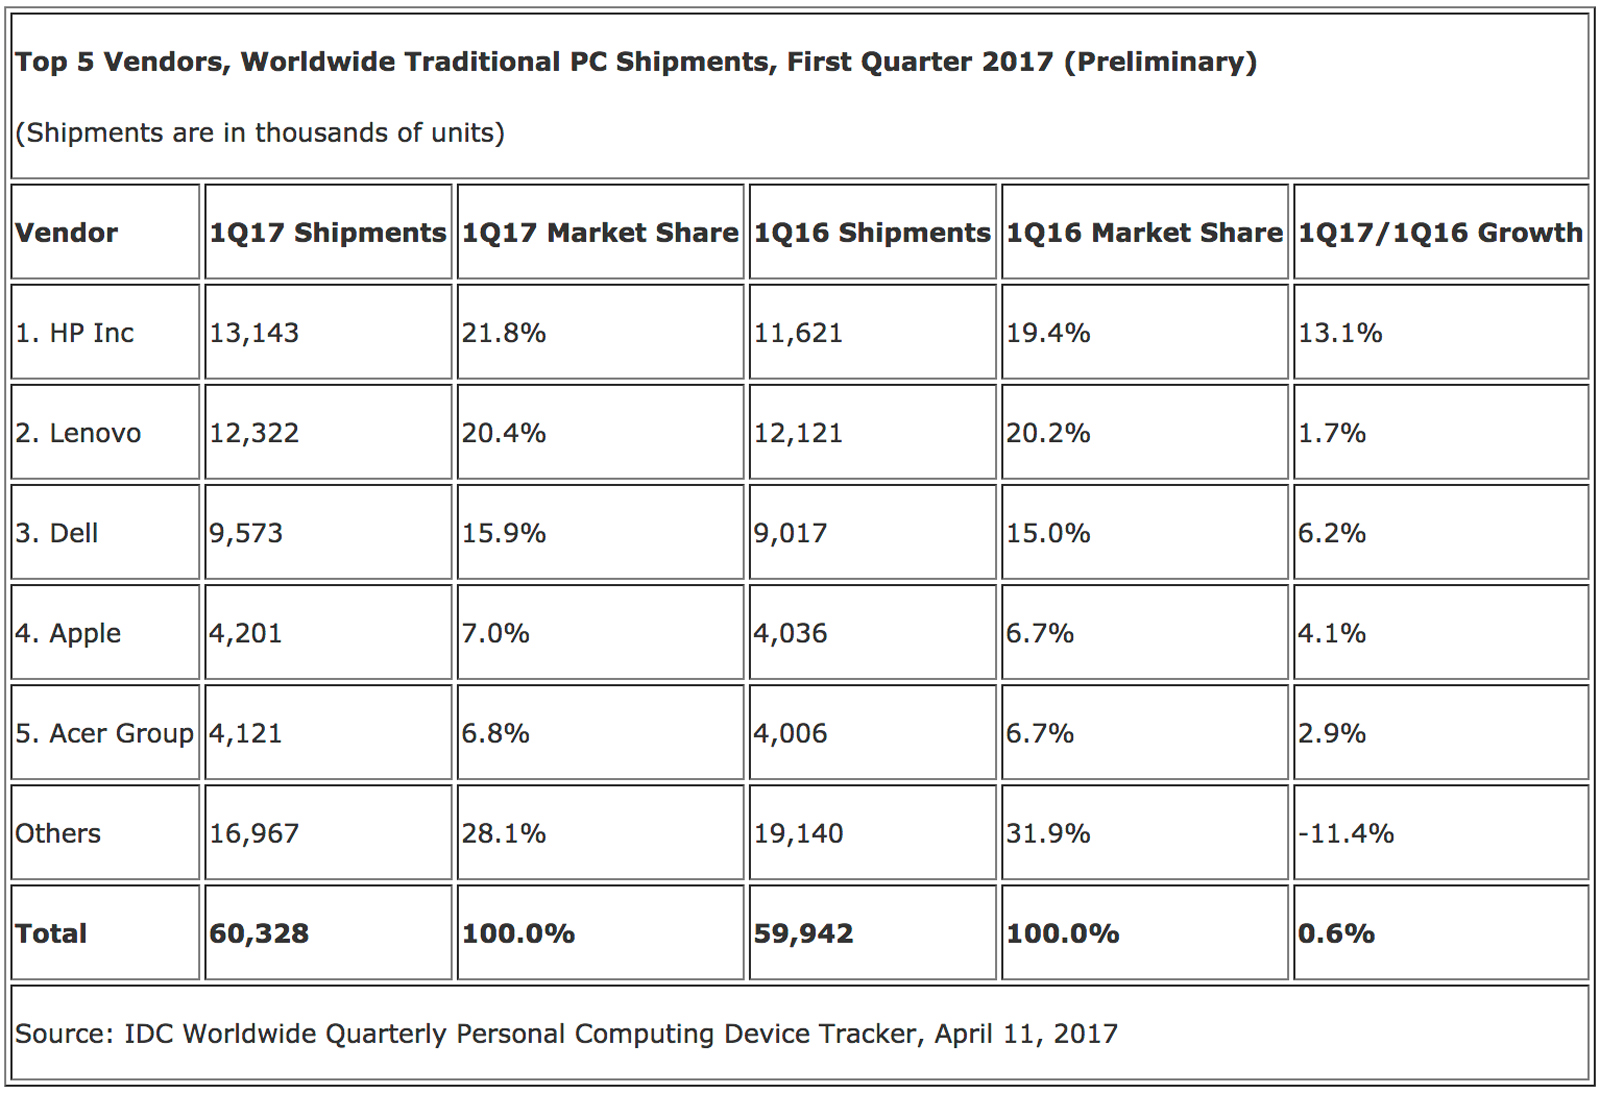 IDC's PC market share estimates for Q1 2017